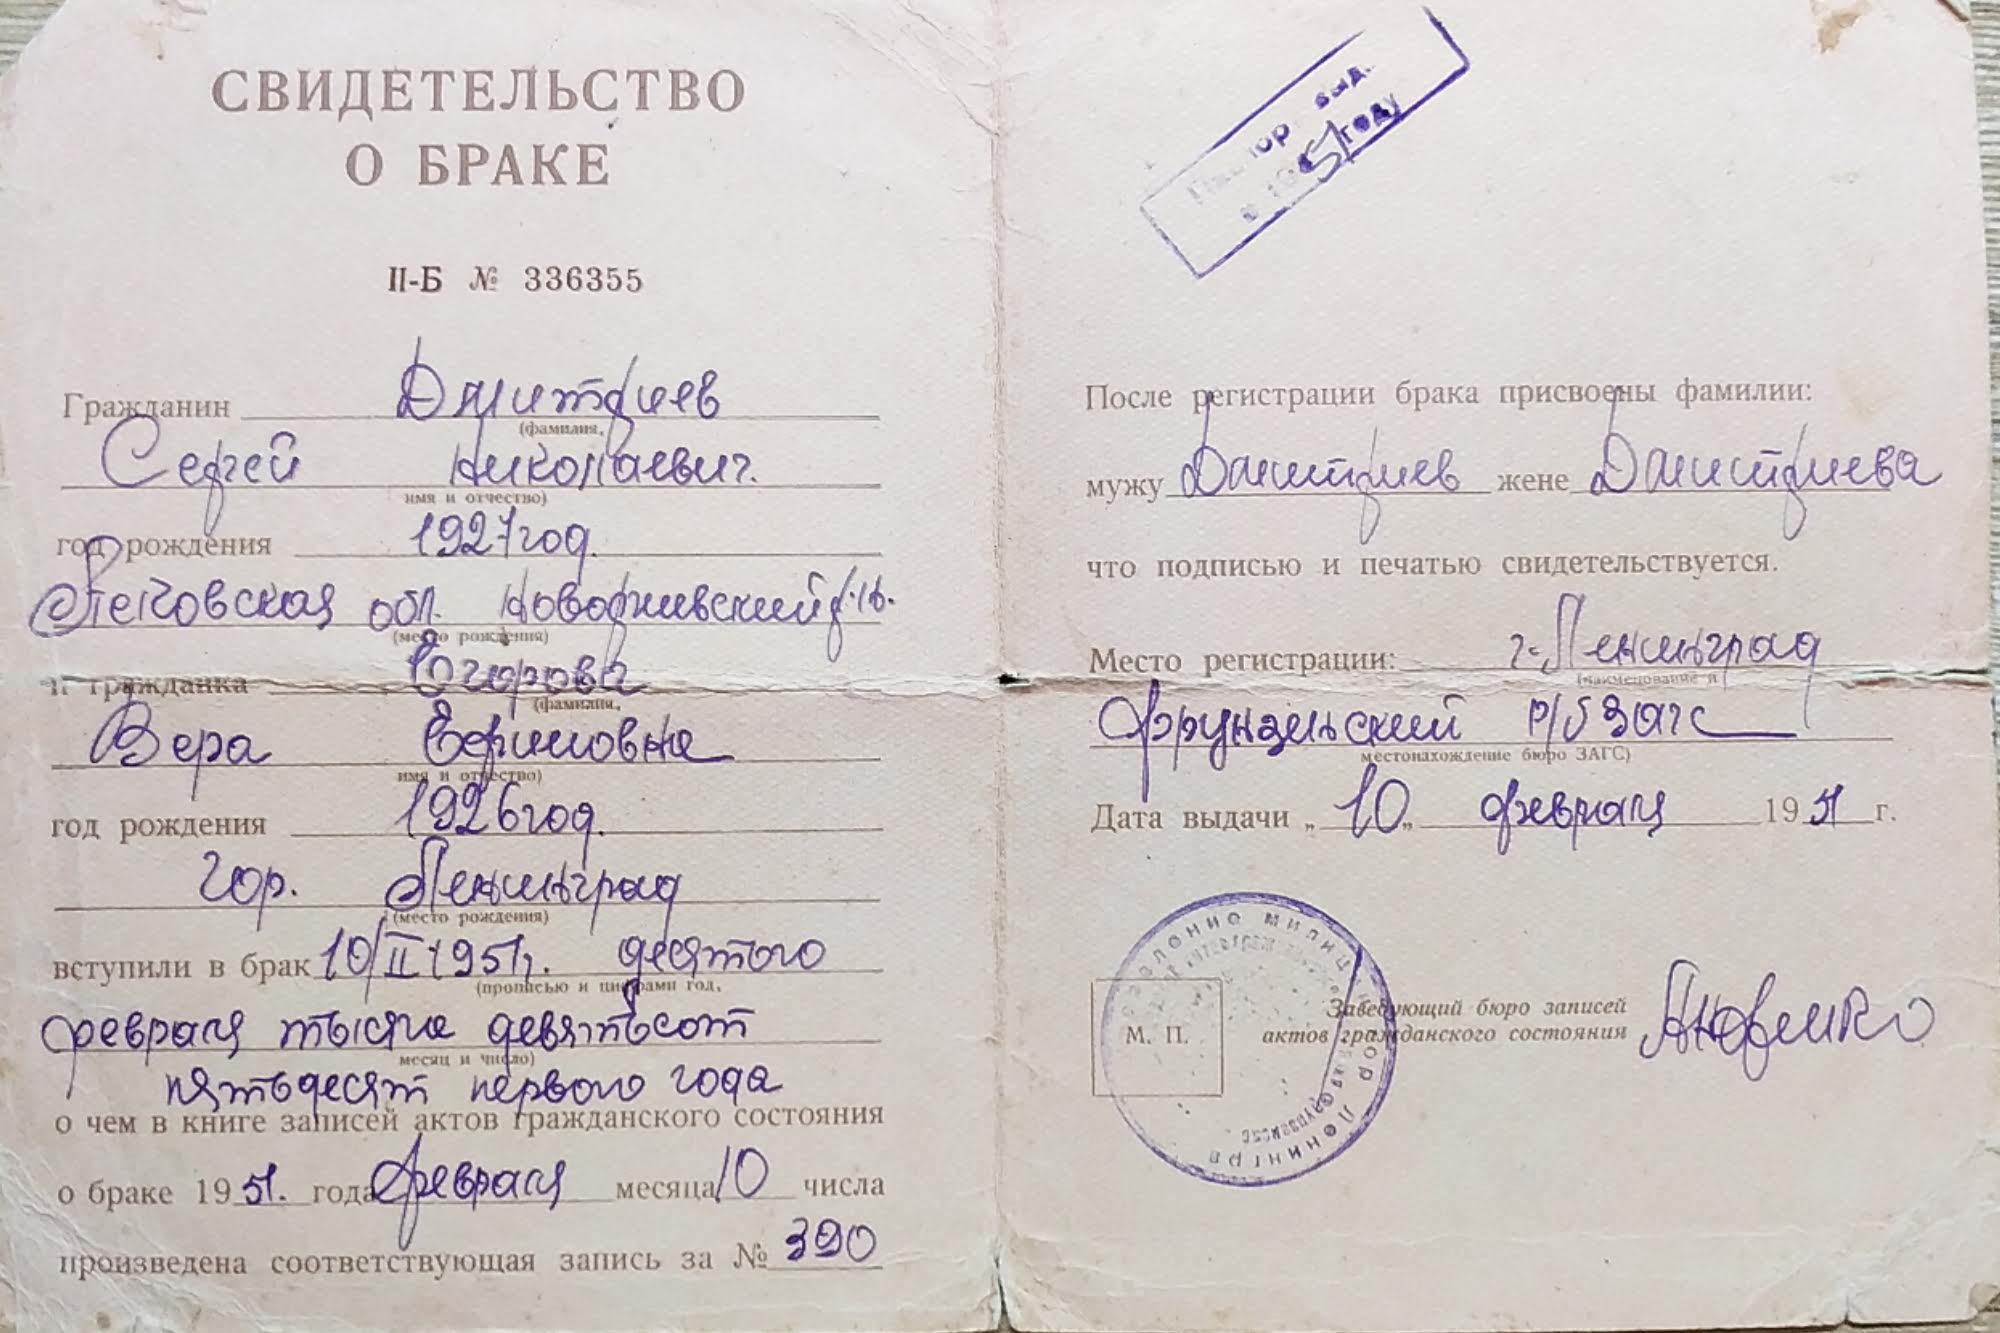 Вера Егорова Свадьба Ленинград 10 февраля 1951  